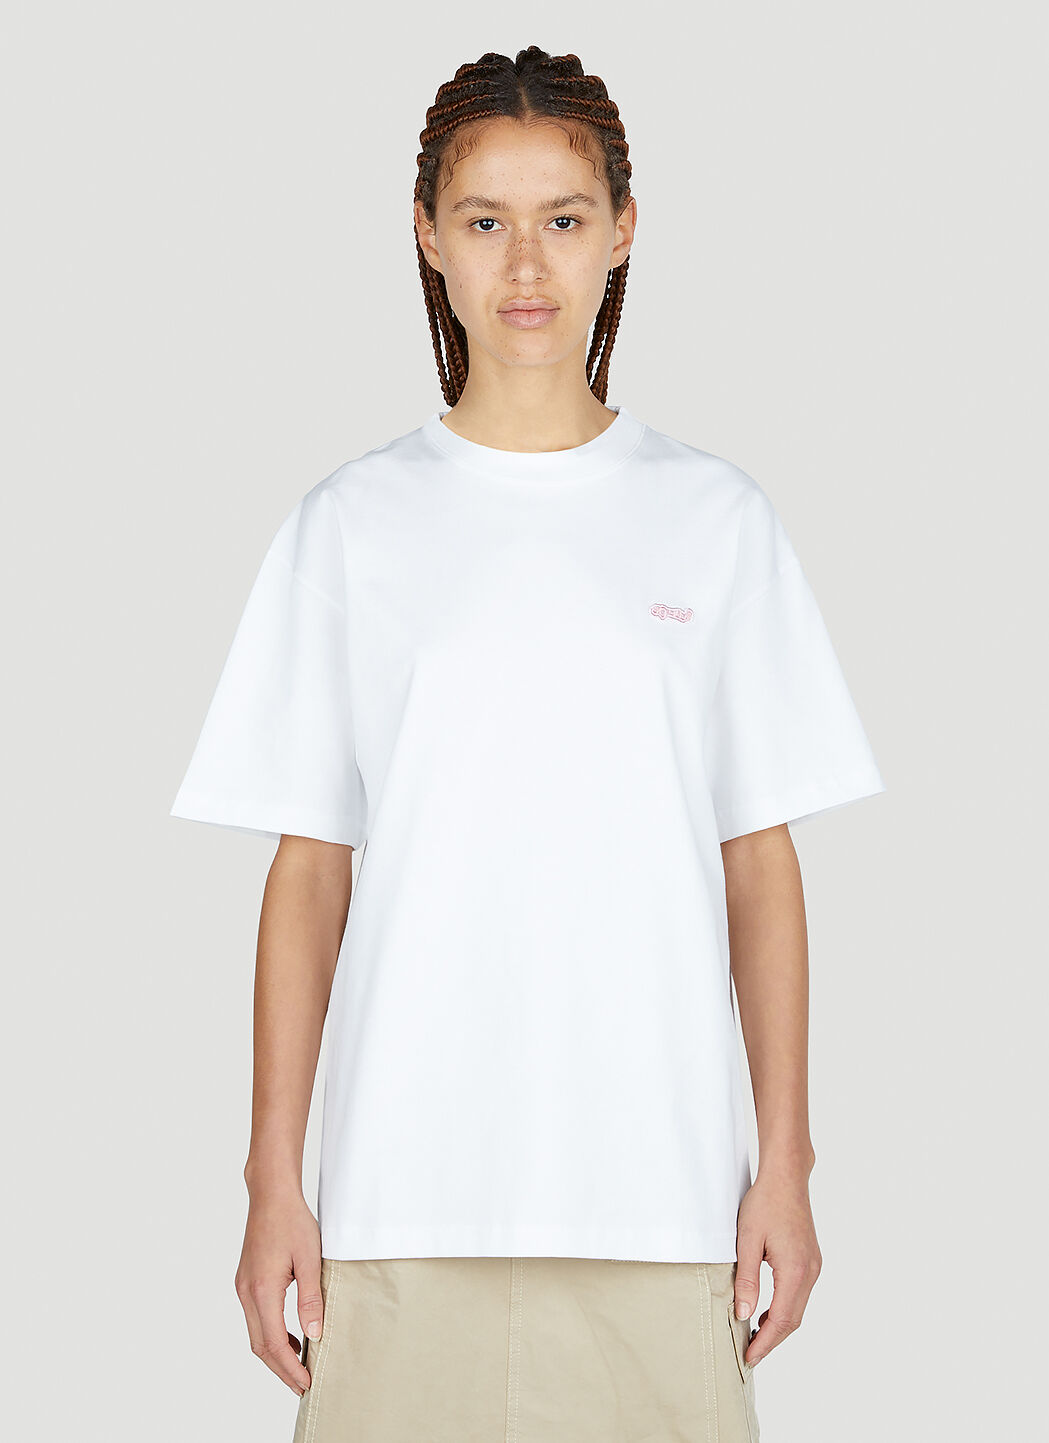 Soulland Balder Patch T-Shirt Beige sld0352020